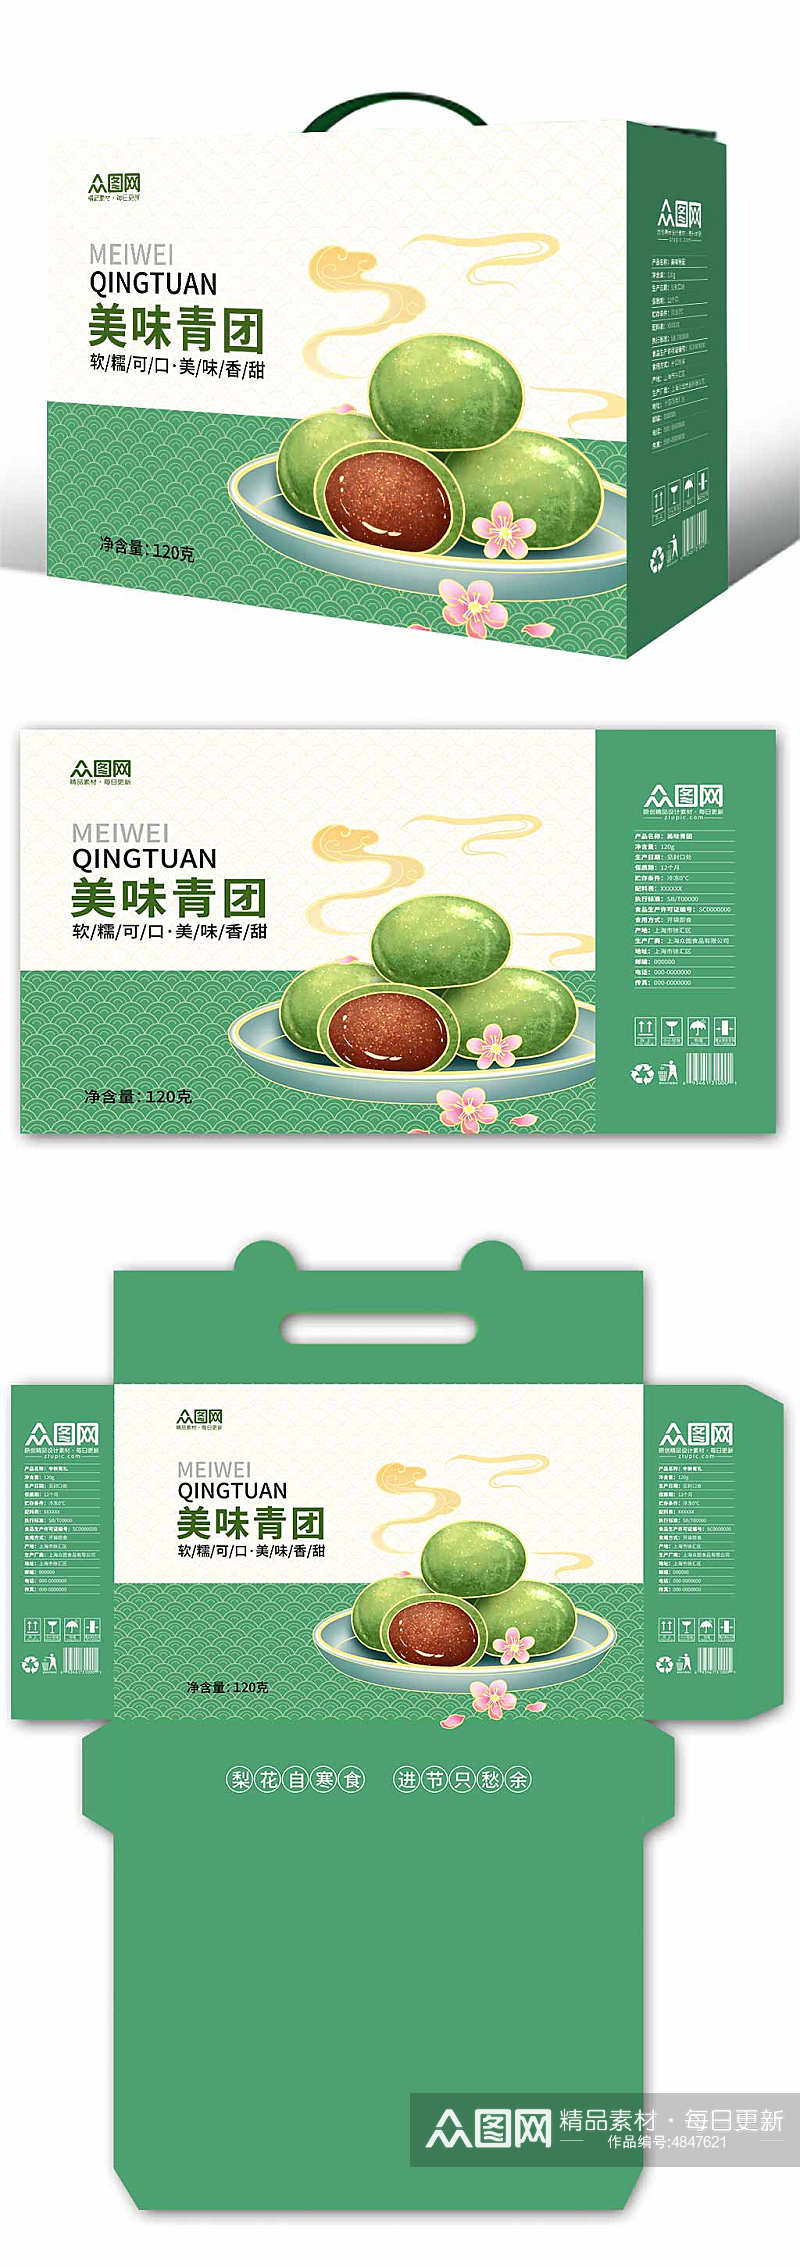 绿色简约青团艾叶粑美食包装礼盒设计素材